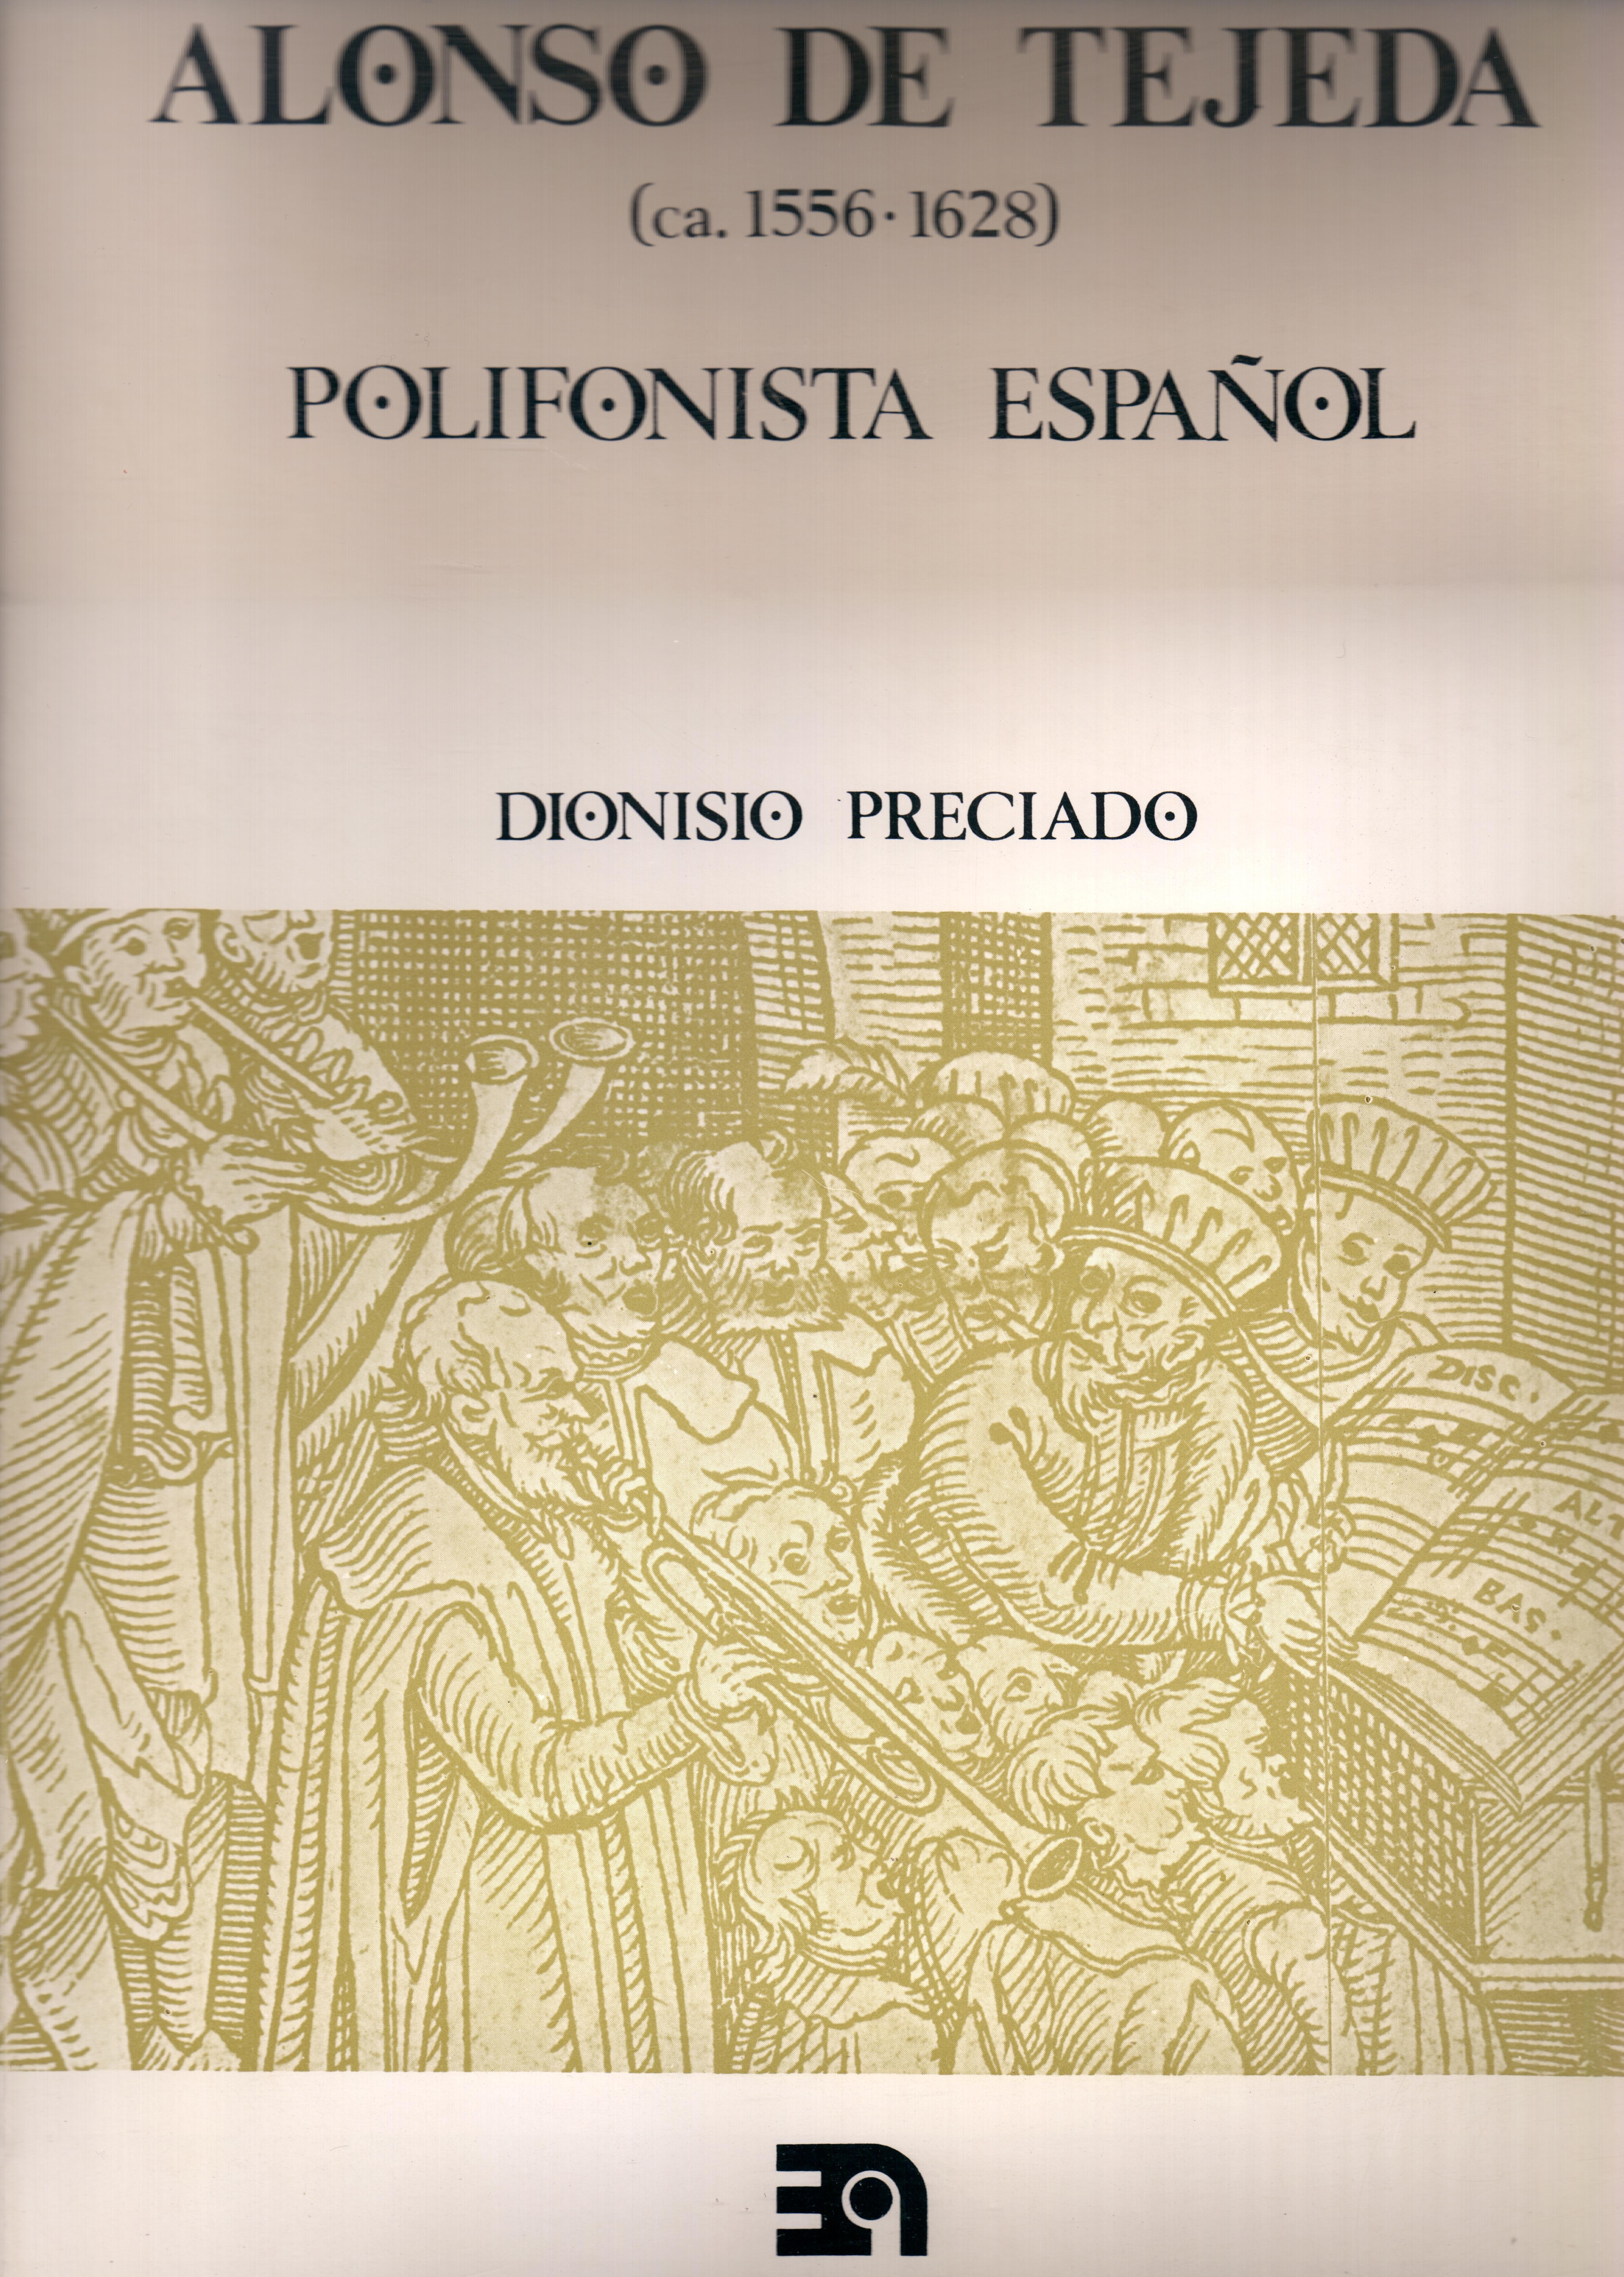 Alonso de Tejeda, polifonista español. Vol. I
Obras completas